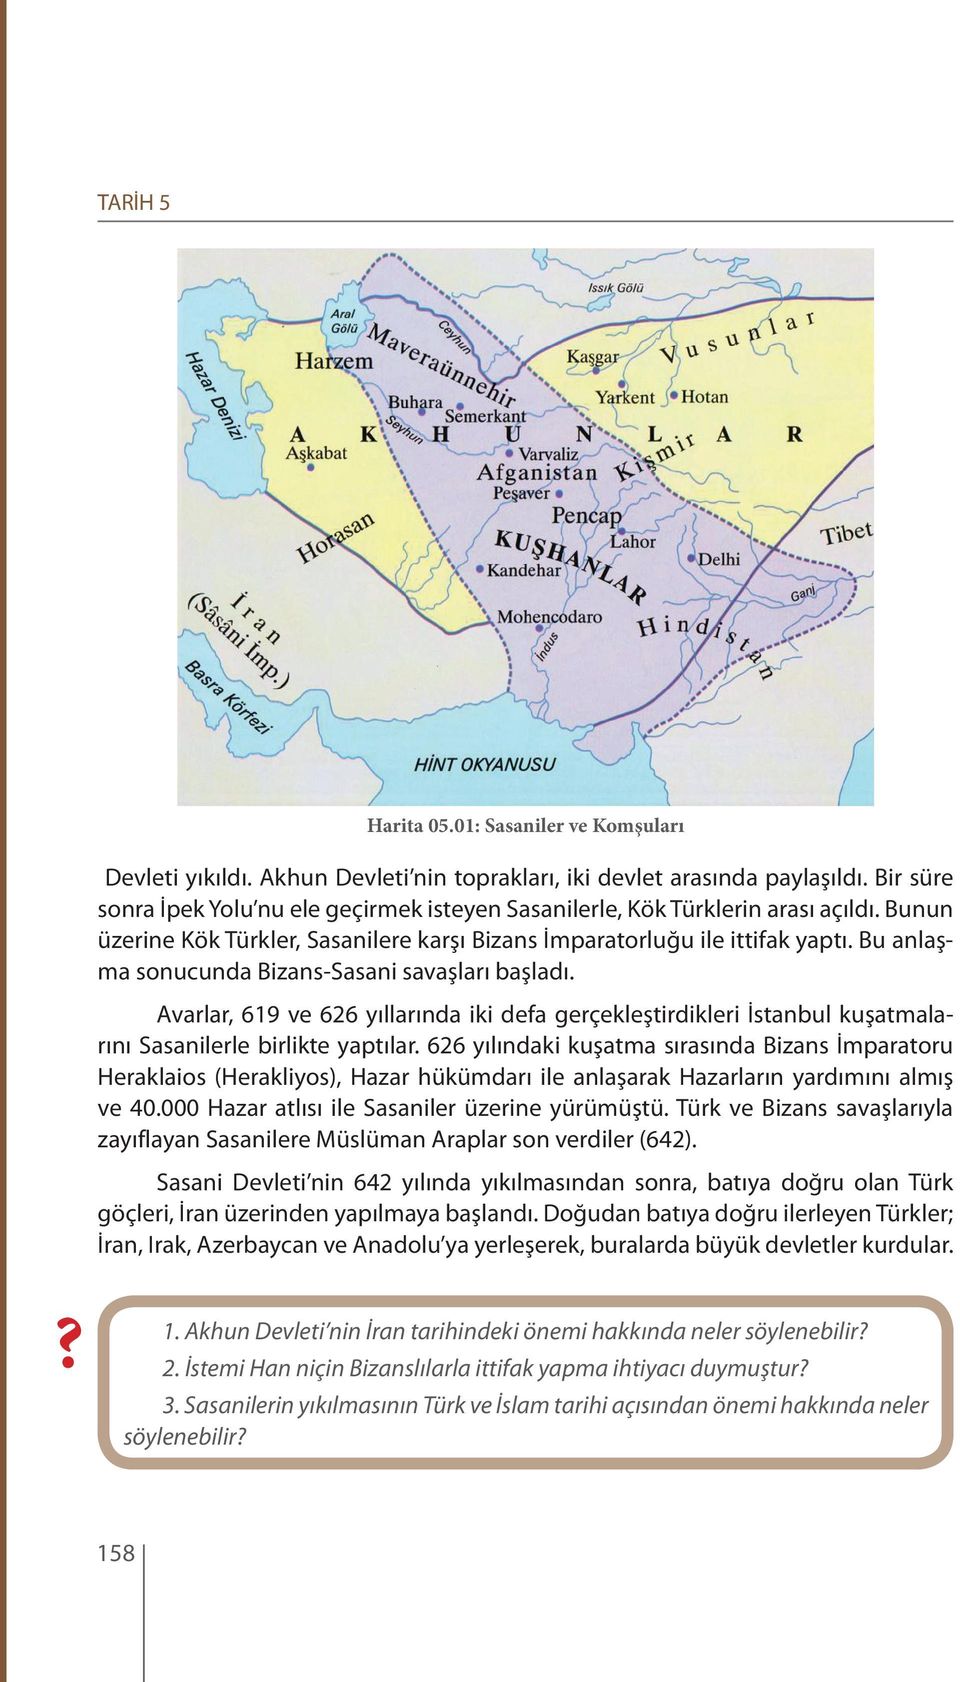 Bu anlaşma sonucunda Bizans-Sasani savaşları başladı. Avarlar, 619 ve 626 yıllarında iki defa gerçekleştirdikleri İstanbul kuşatmalarını Sasanilerle birlikte yaptılar.